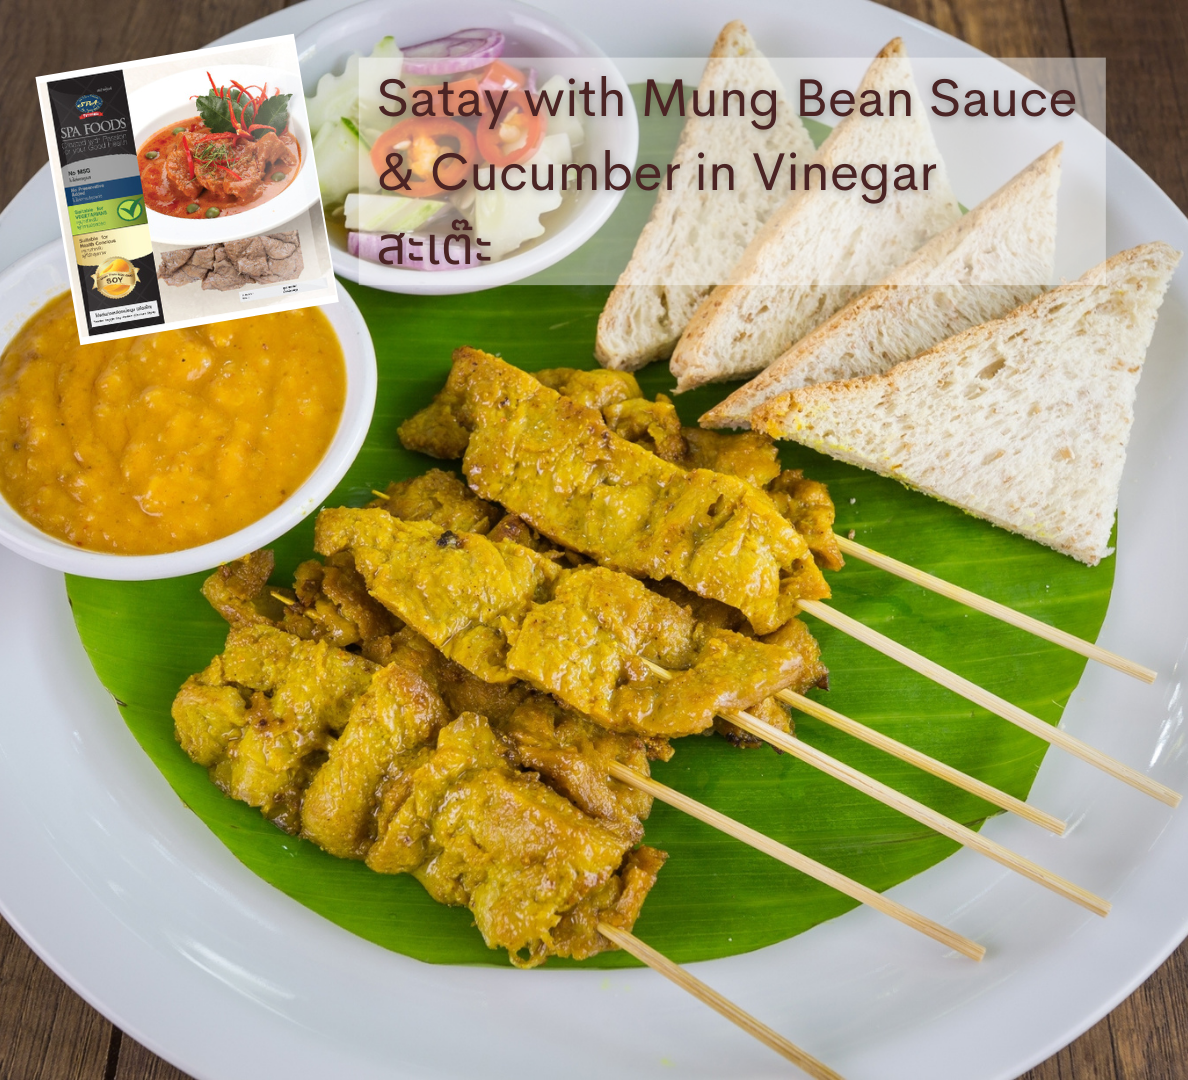 เมนูอาหารเจ-มังสวิรัติ spa foods satay with mung bean sauce & cucumber in vinegar สะเต๊ะ-vegan